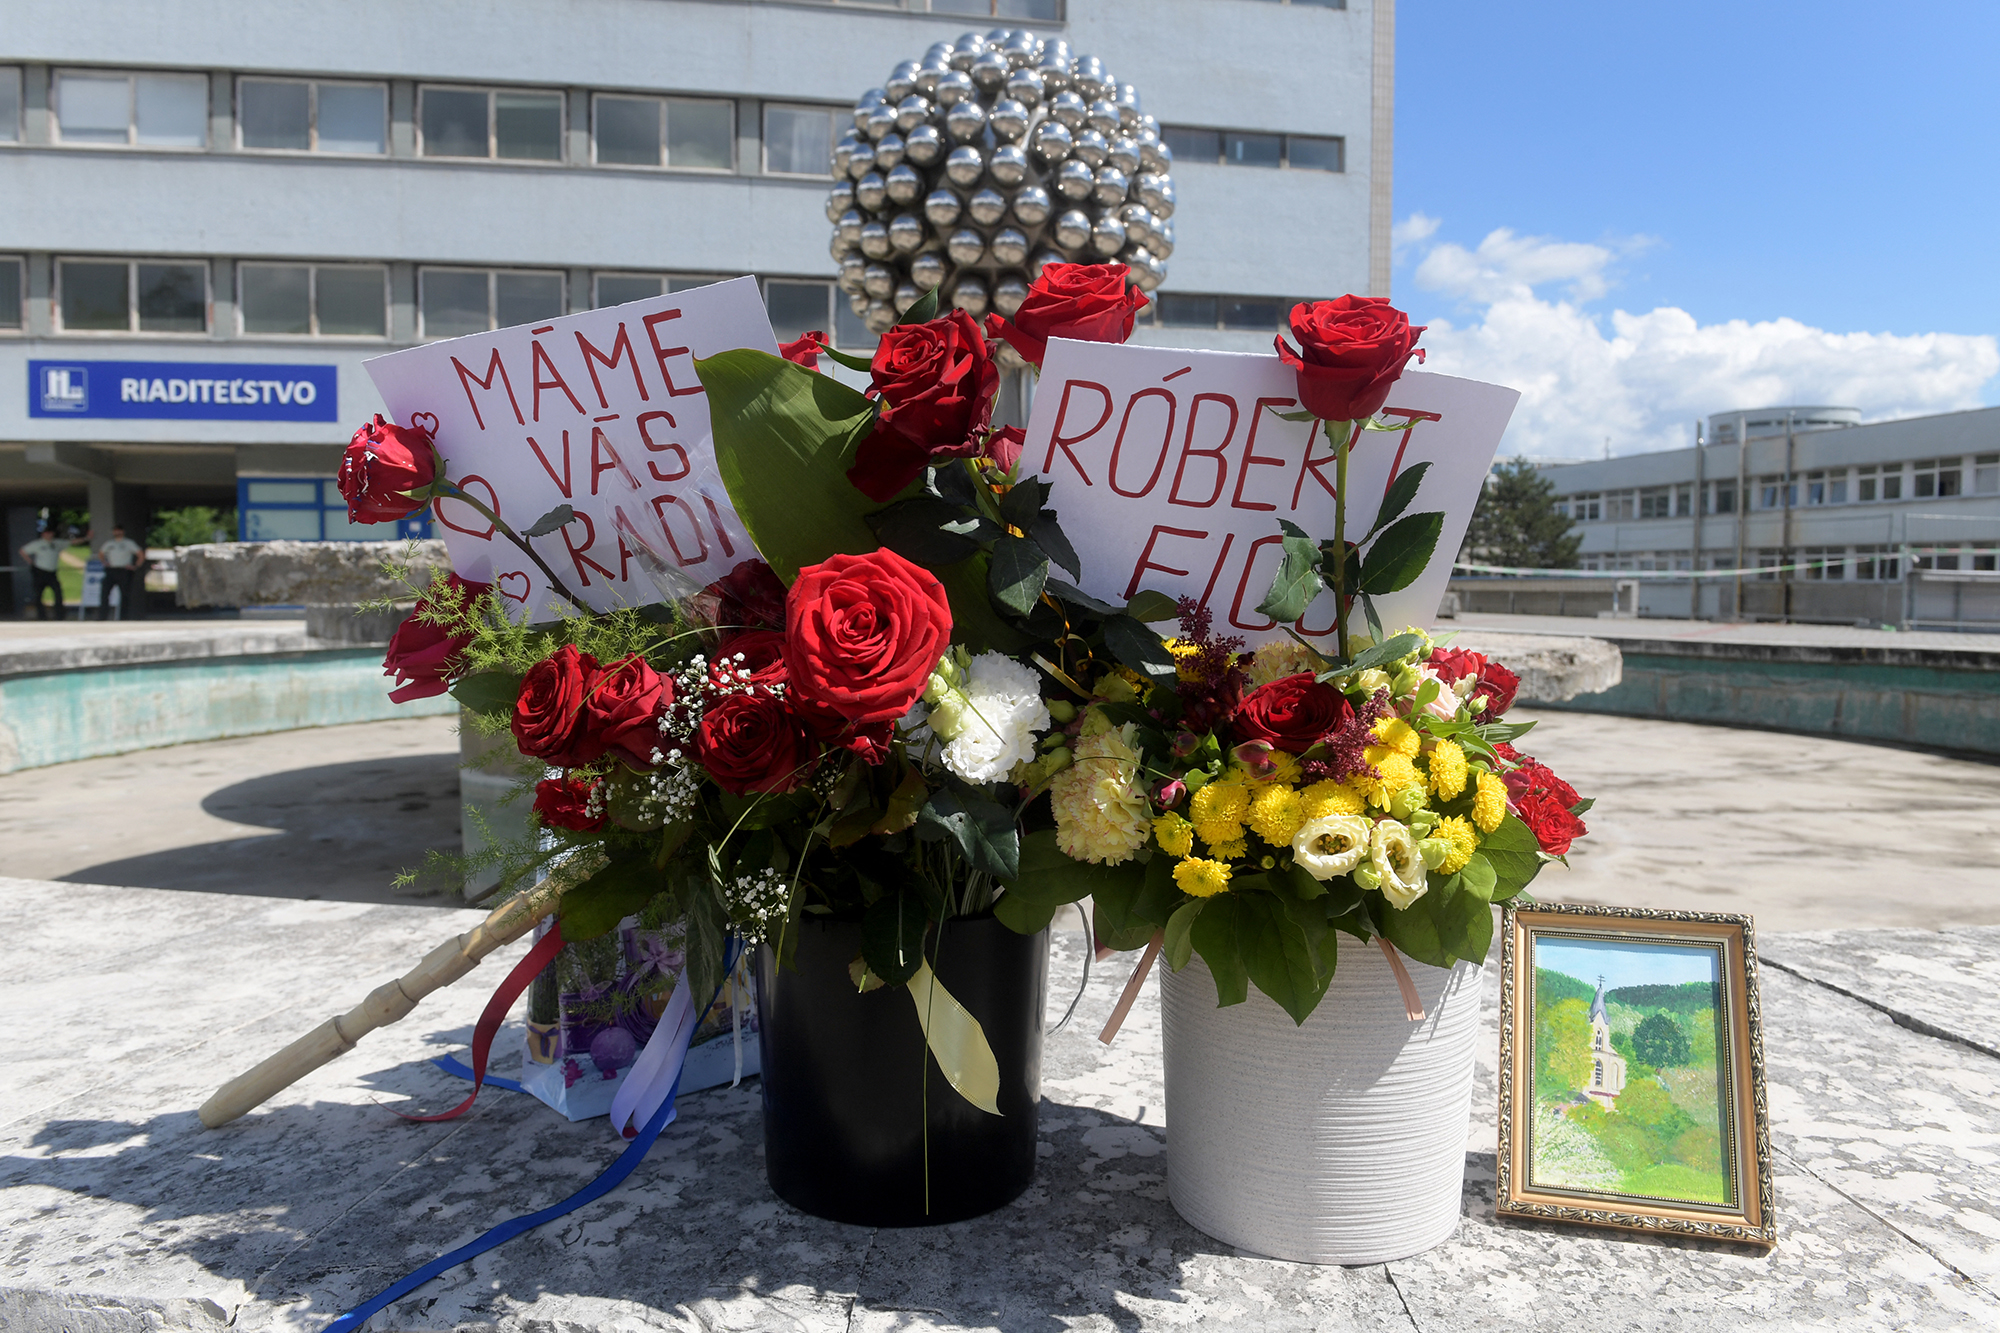 Genesungswünsche für Robert Fico vor dem Krankenhaus in Banska Bystrica